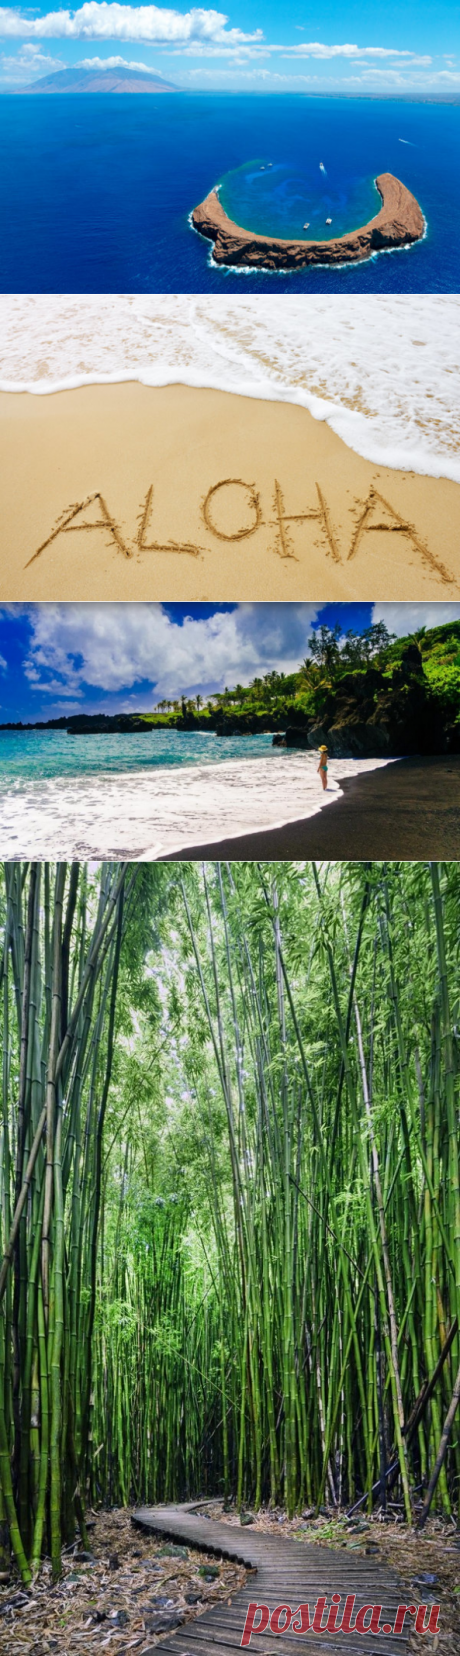 12 причин считать гавайский остров Мауи лучшим в мире. ФОТО - ForumDaily